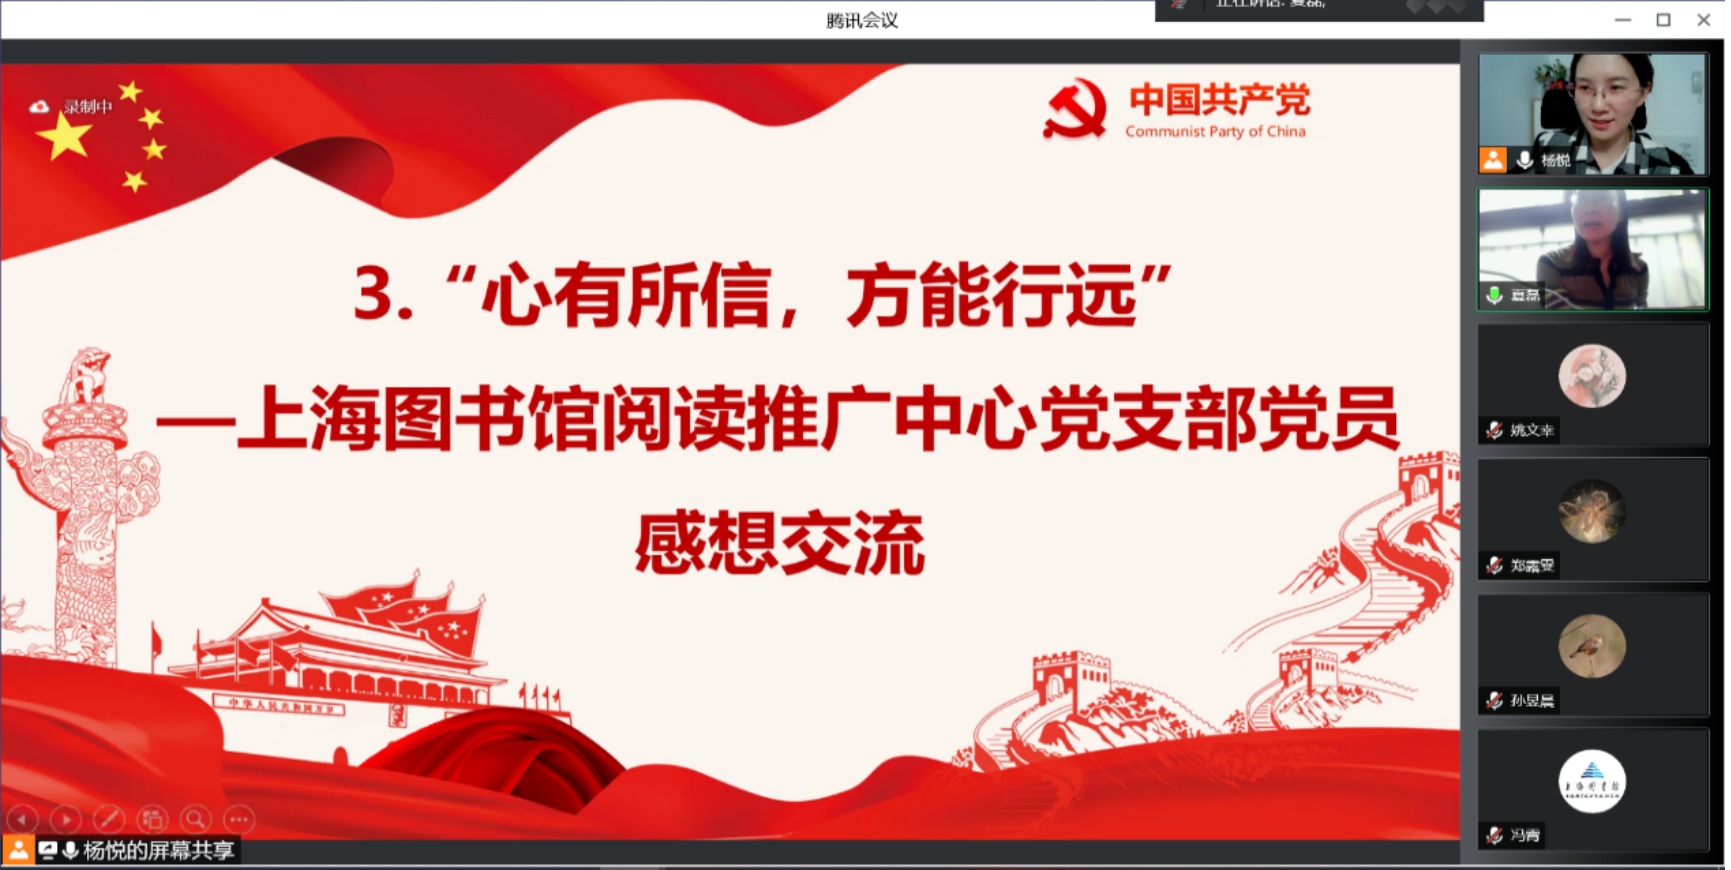 图为上海图书馆阅读推广中心党支部党员感想交流